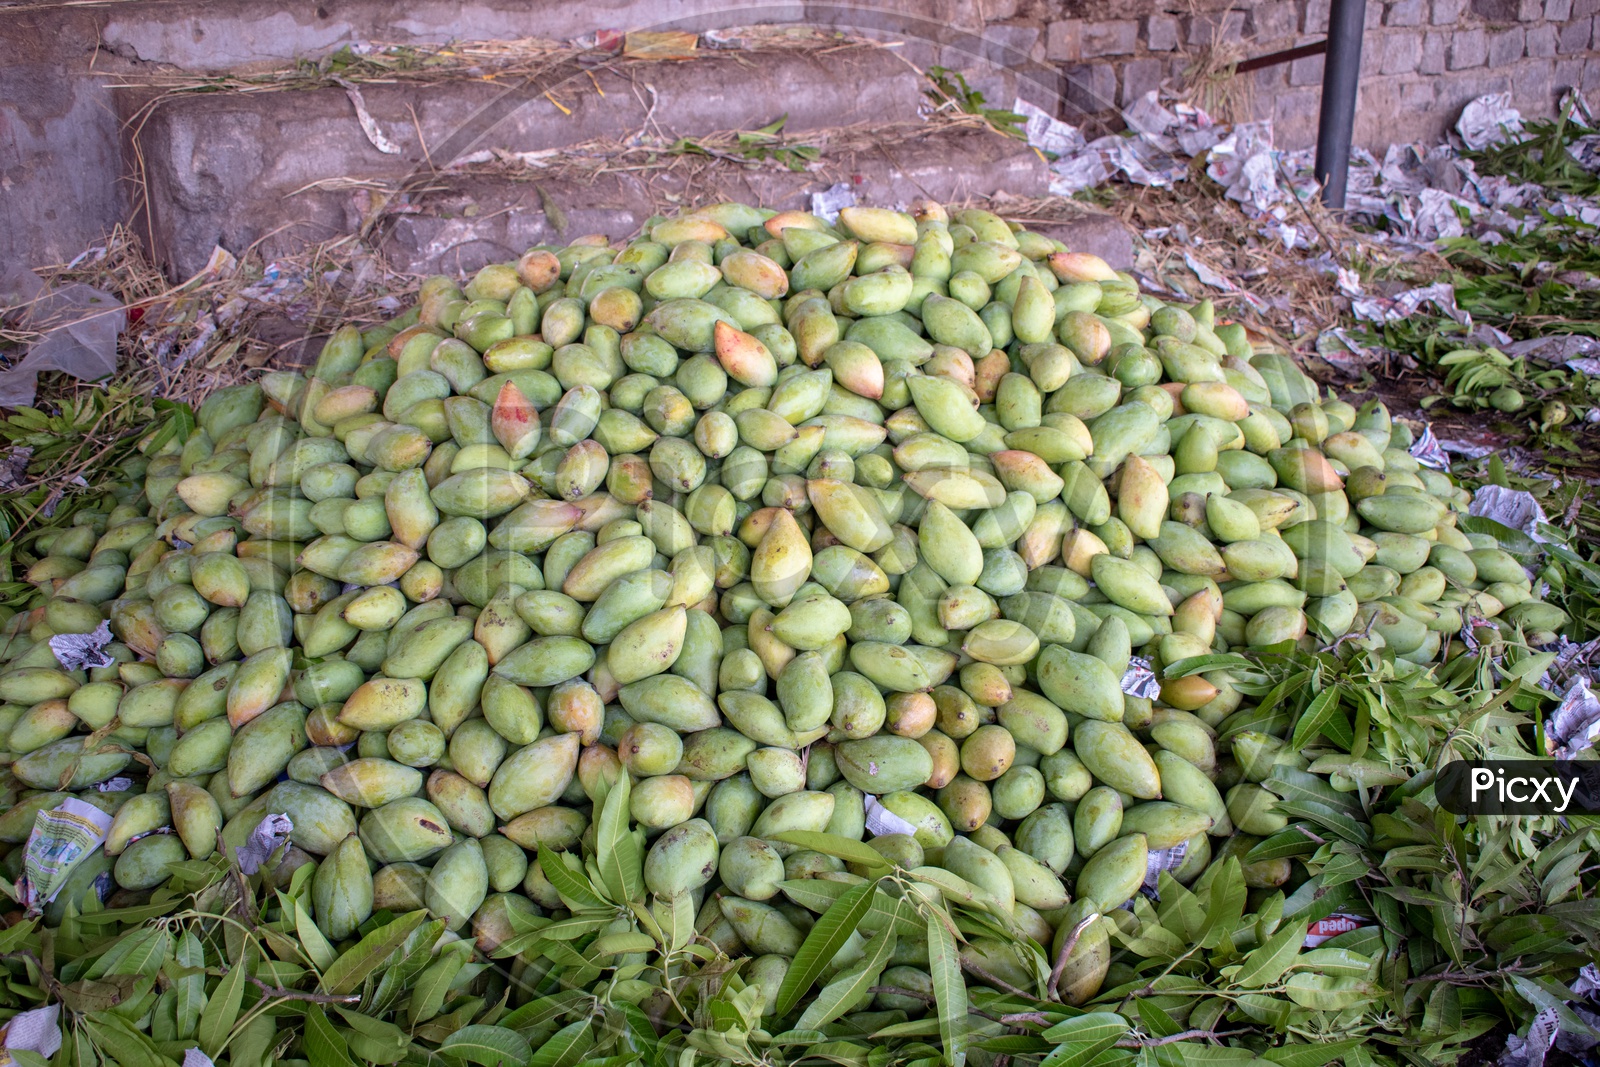 Totapuri or Collector mangoes on ground at Kothapet Fruit market, Dilsukhnagar, Hyderabad.